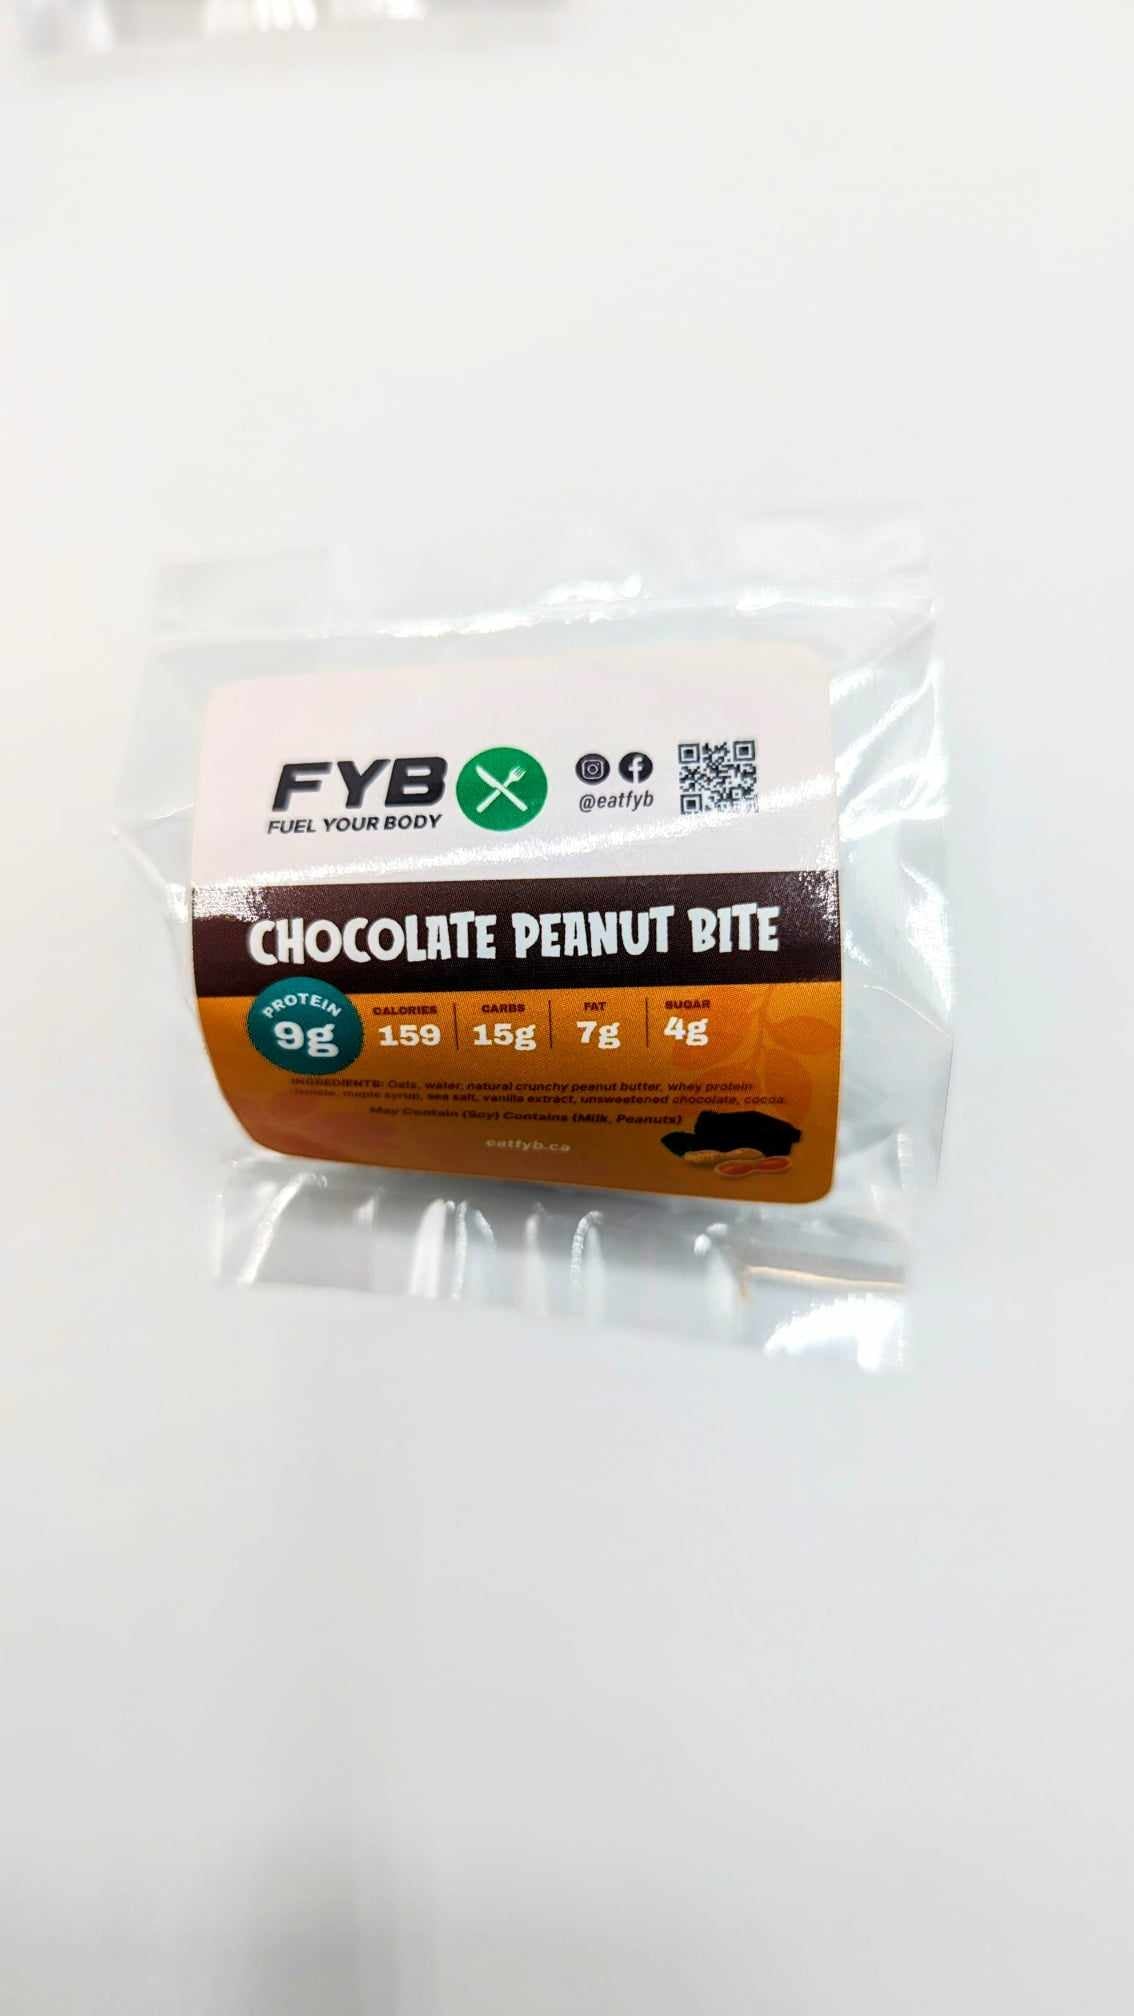 Chocolate Peanut Bite